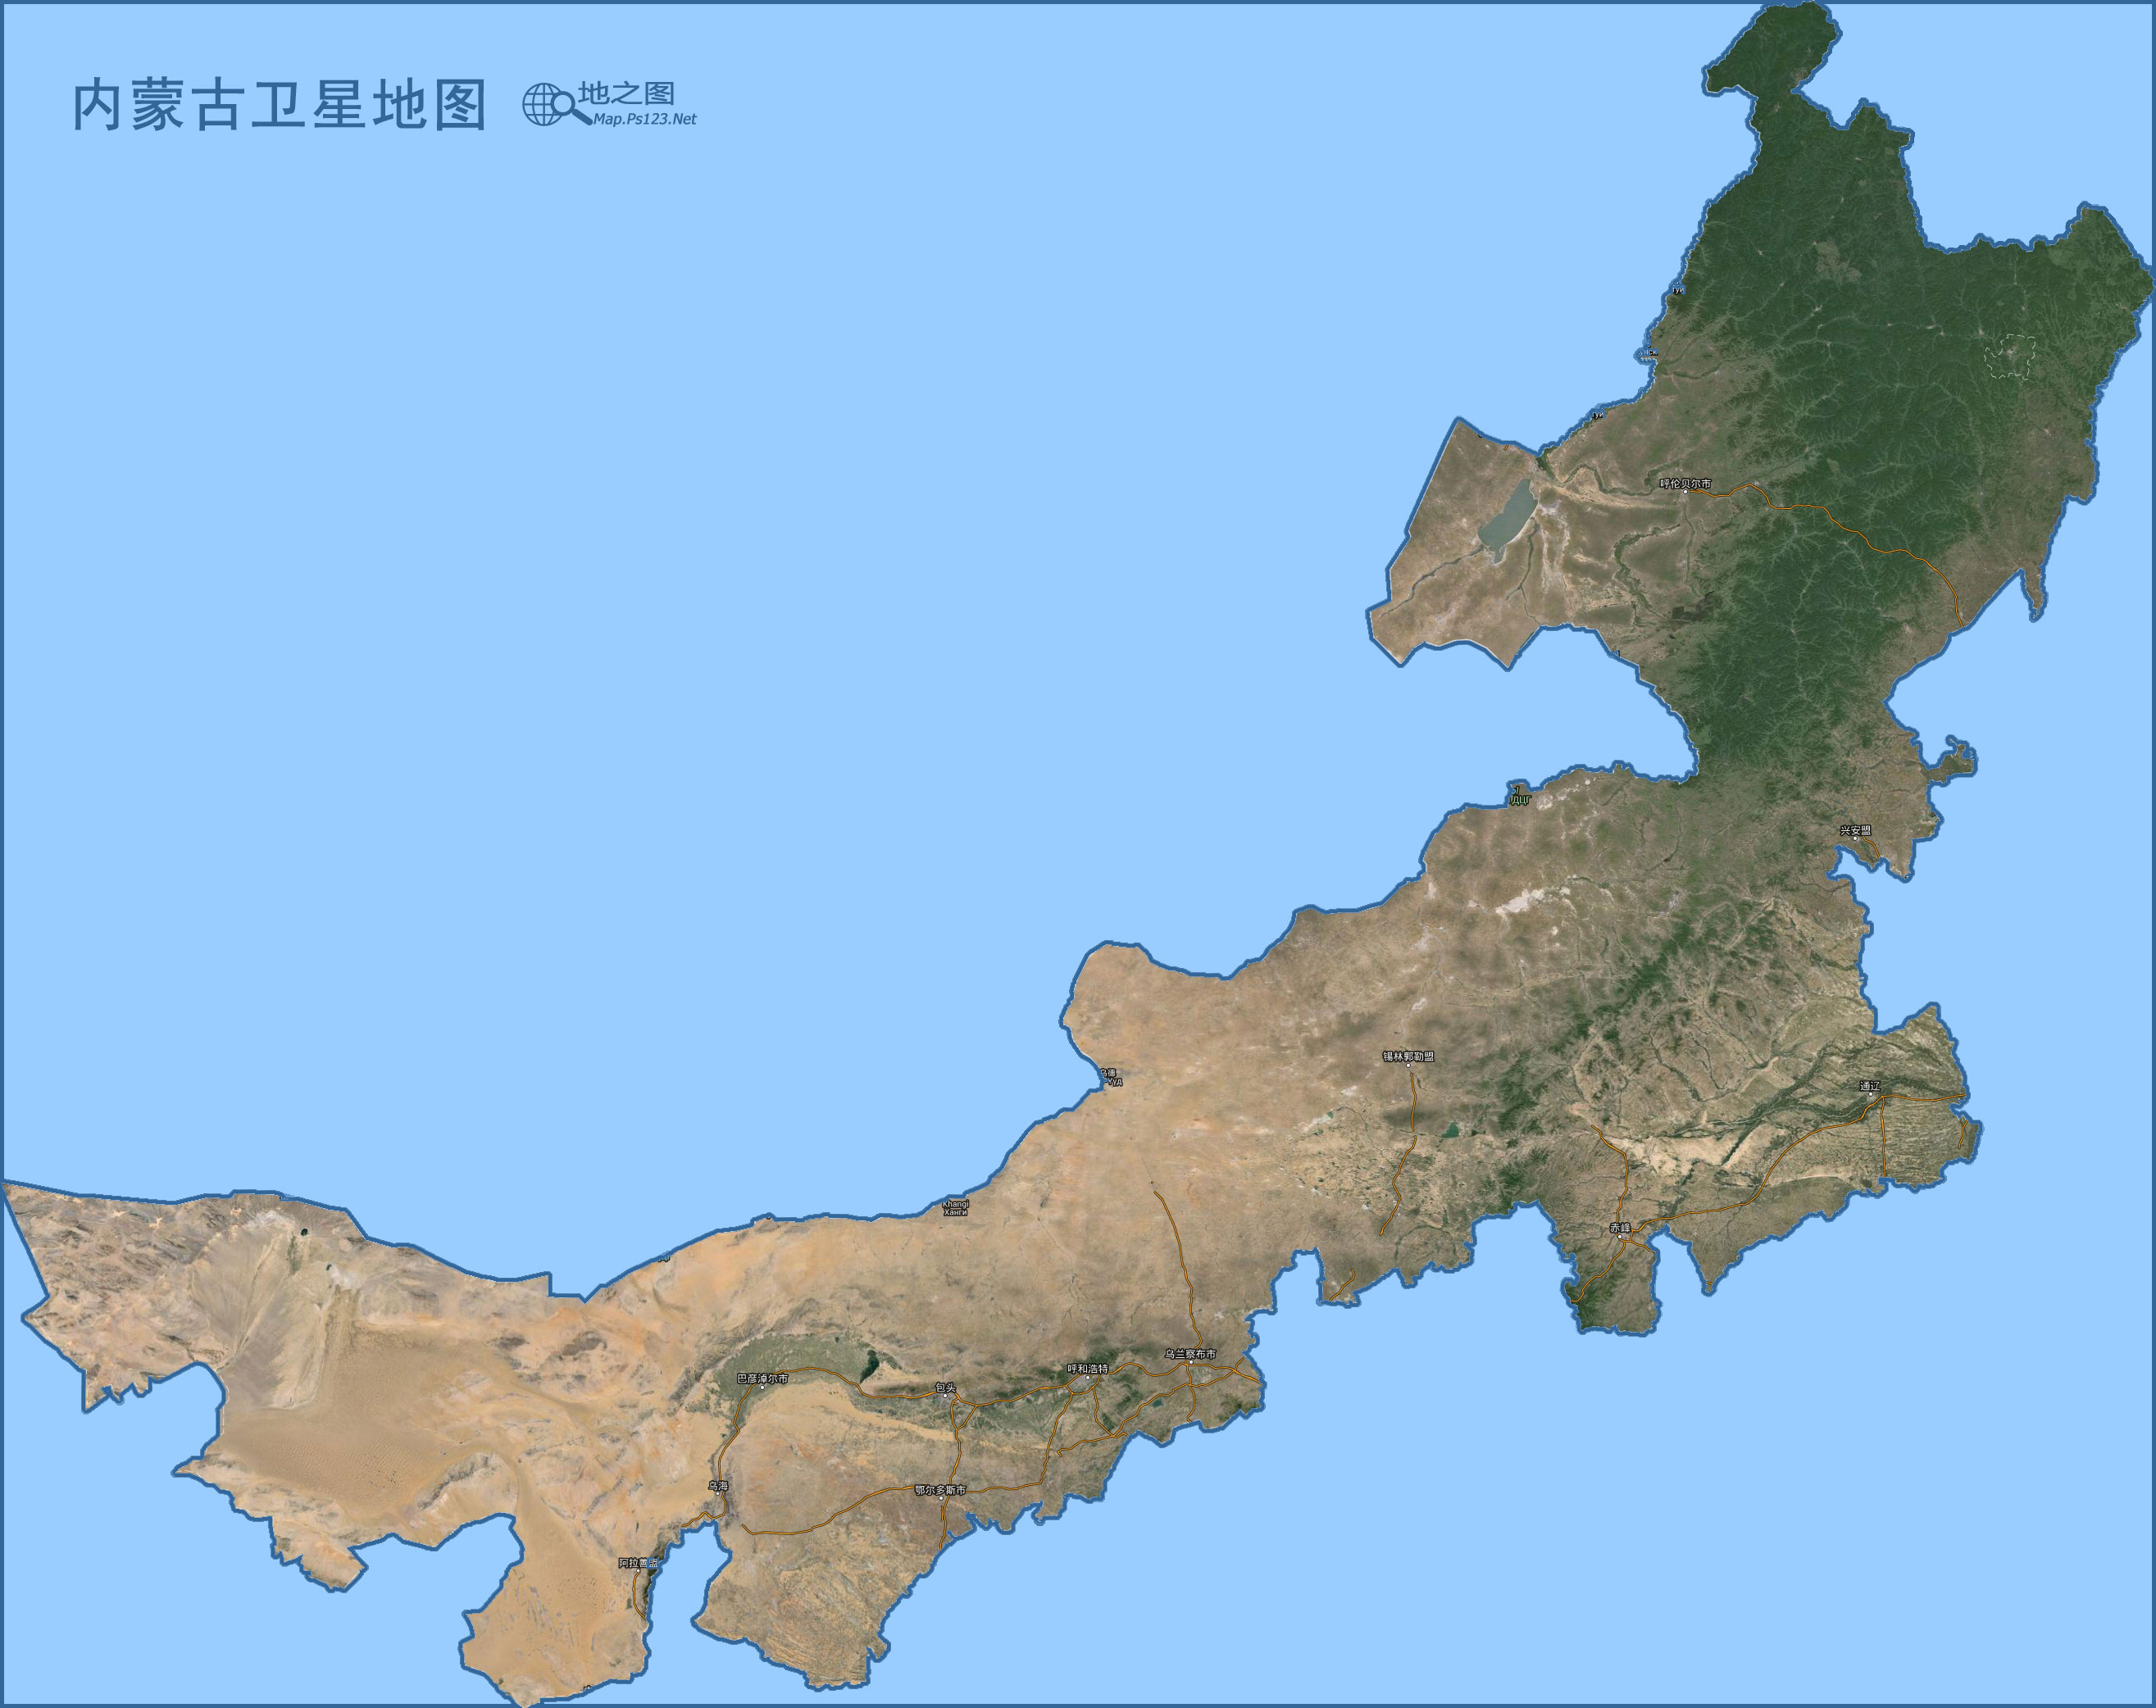 甘肃  宁夏  新疆  青海  西藏  香港  澳门  台湾 上一幅地图图片